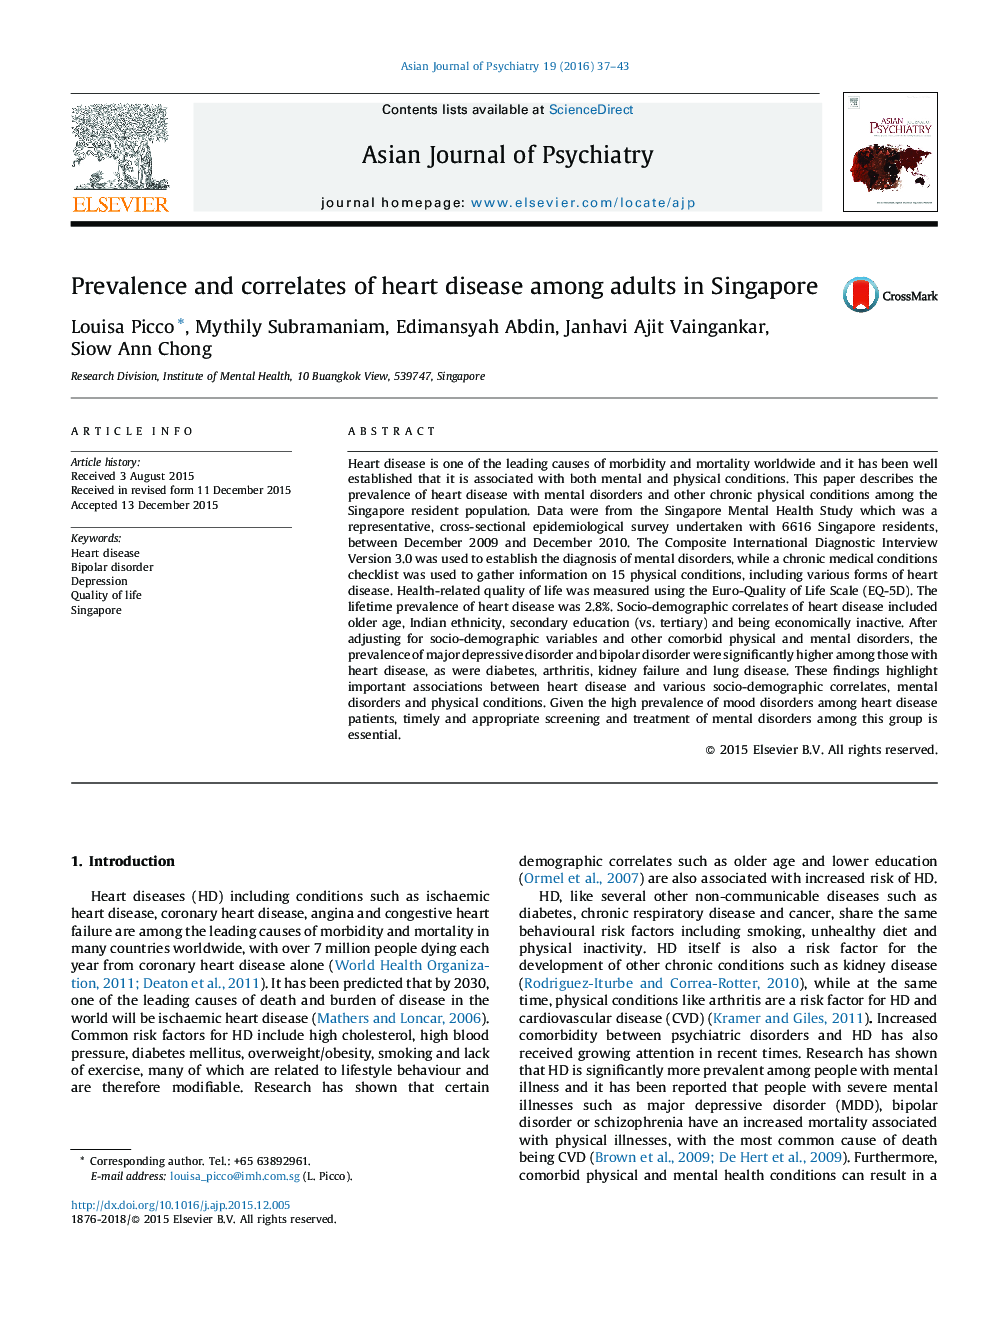 شیوع و عوامل مرتبط با بیماری های قلبی در بزرگسالان در سنگاپور